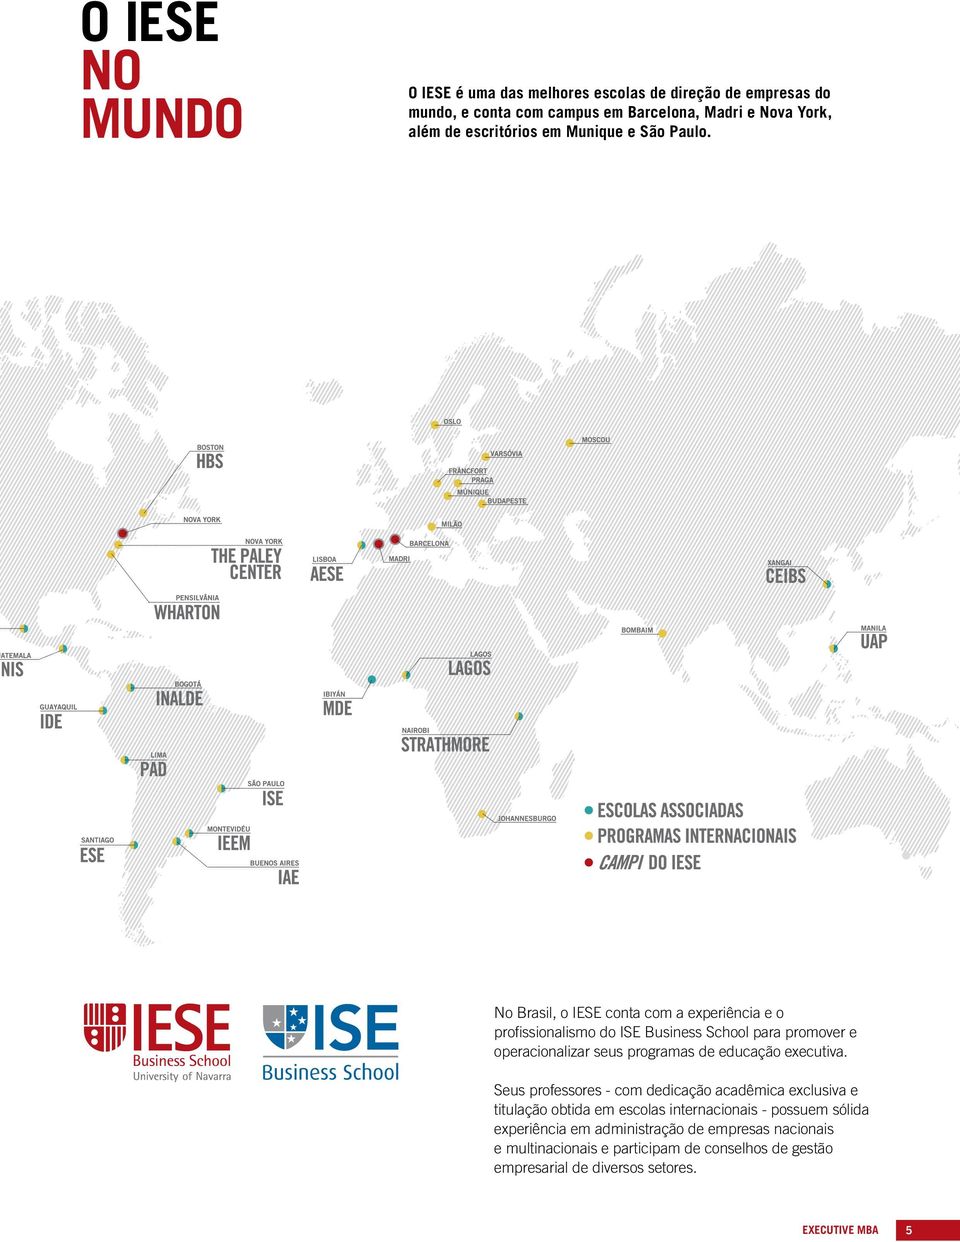 No Brasil, o IESE conta com a experiência e o profissionalismo do ISE Business School para promover e operacionalizar seus programas de educação